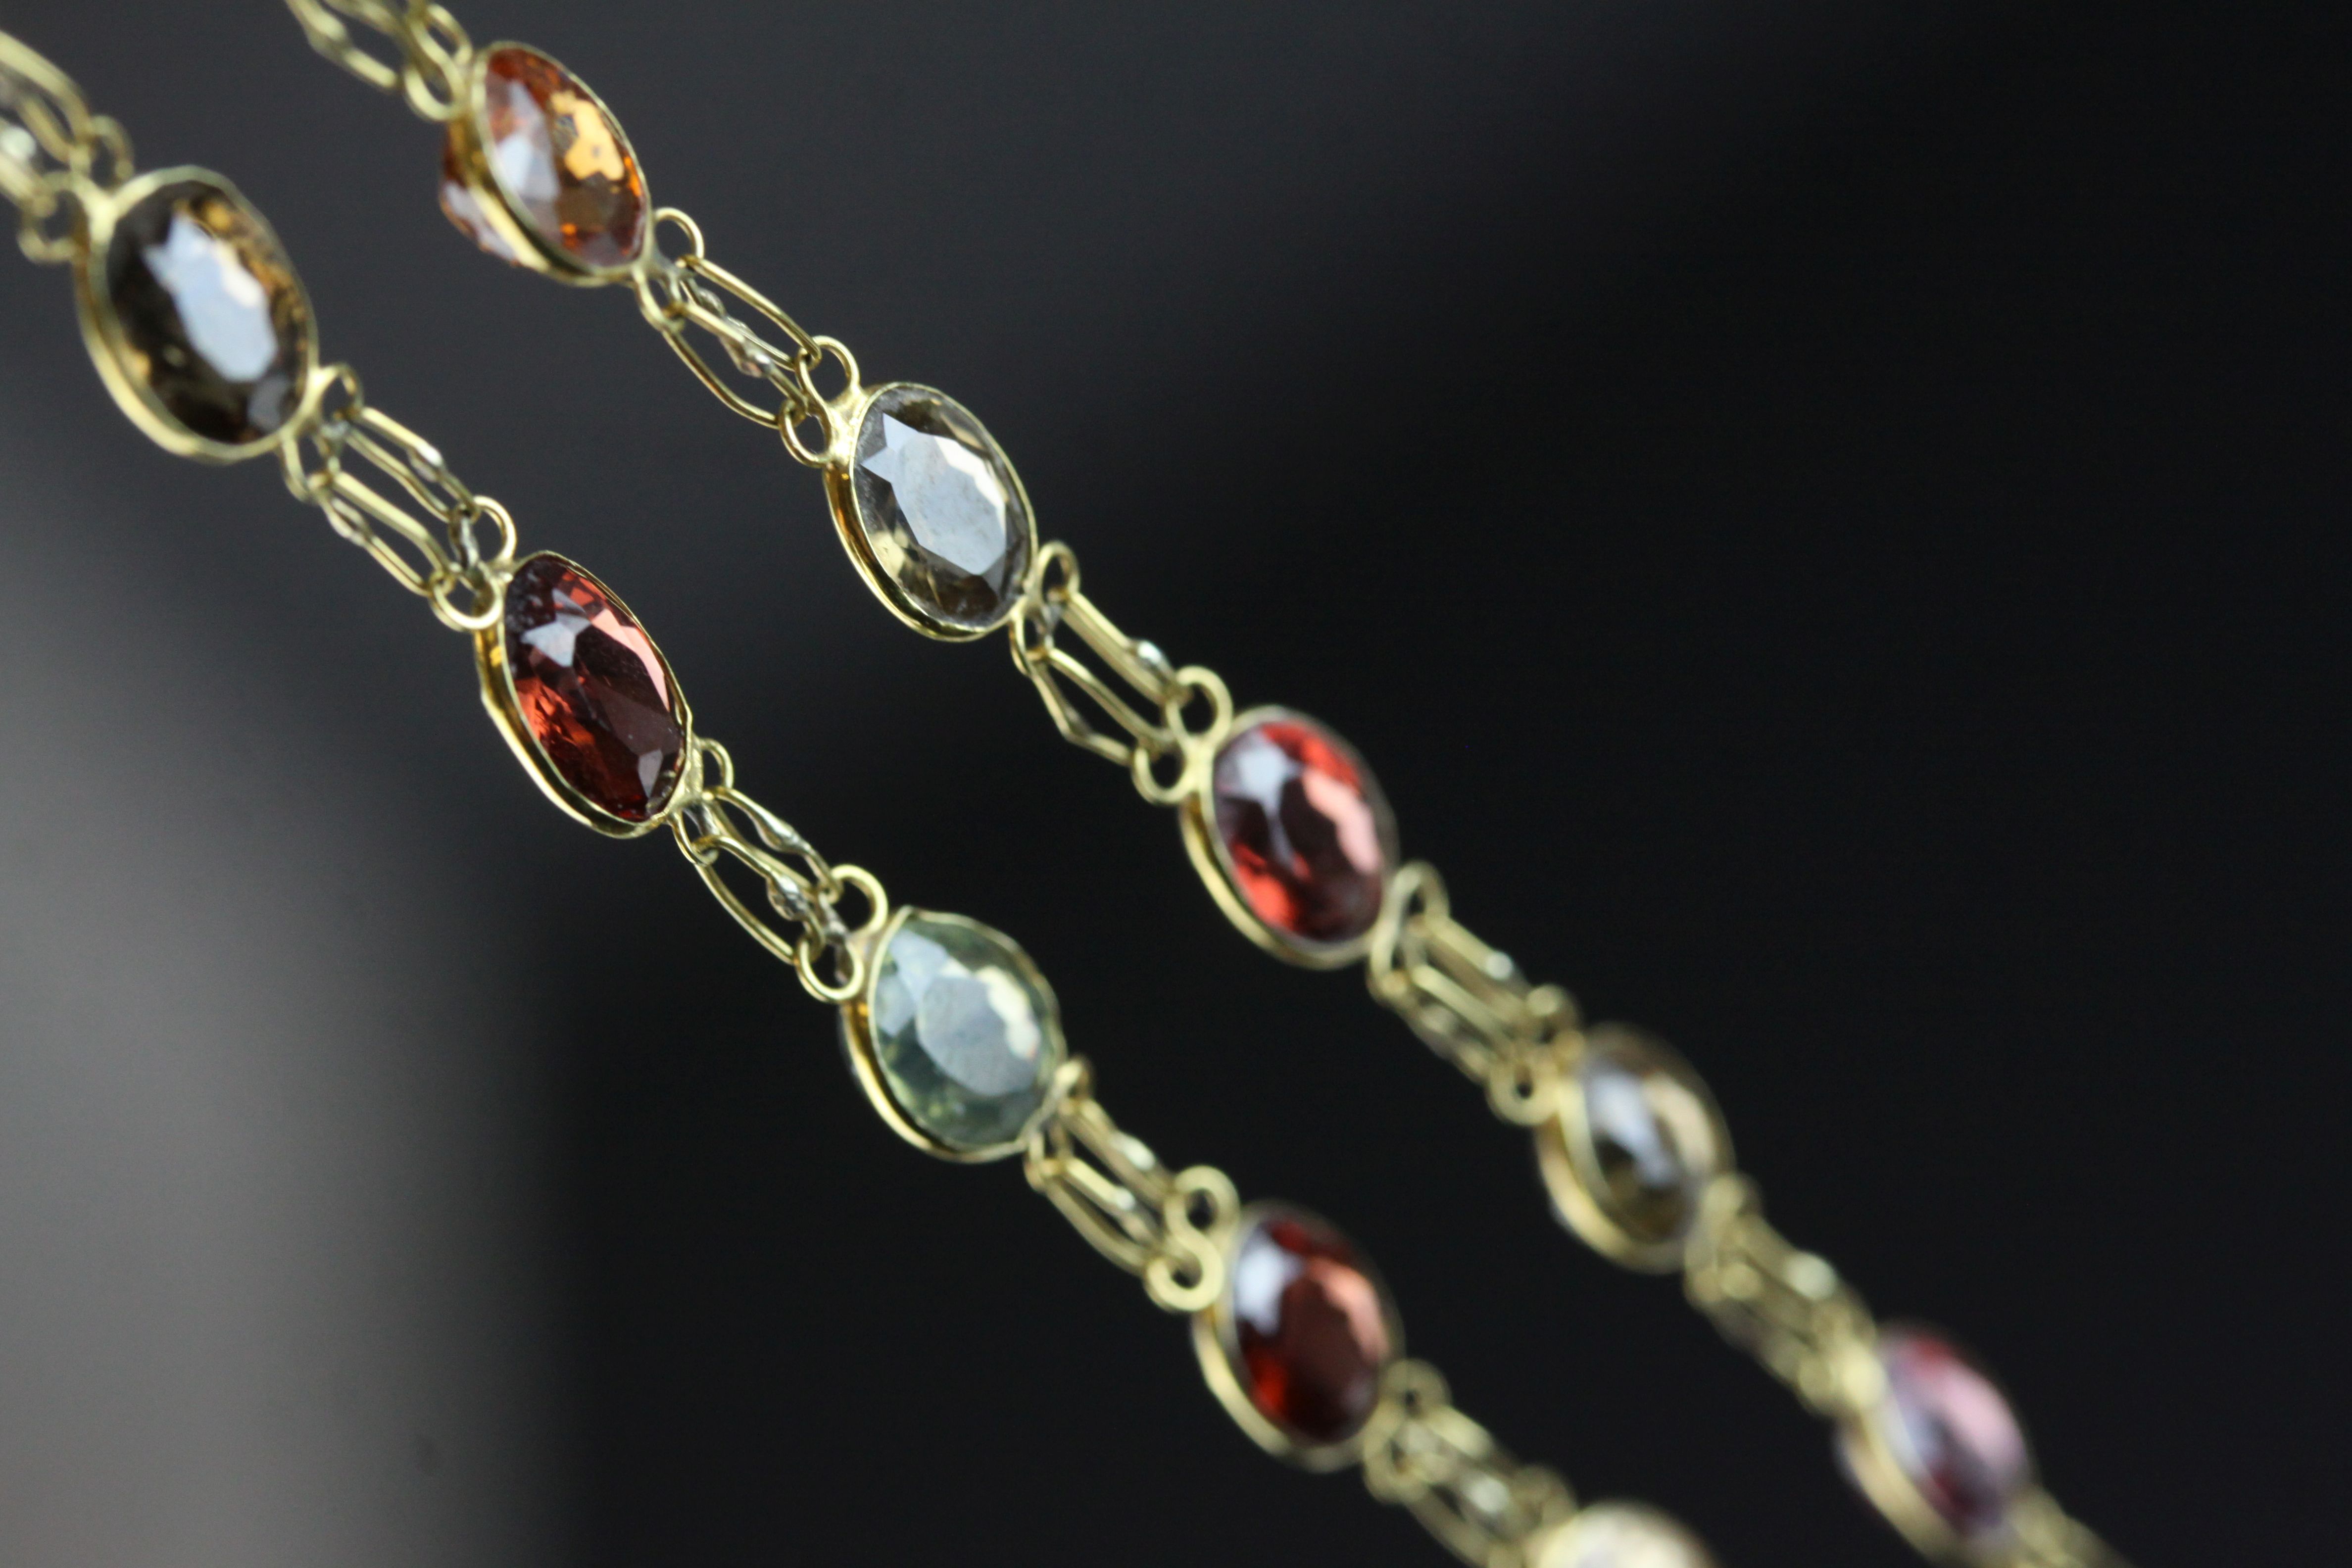 Multi gemstone unmarked yellow gold riviere necklace, comprising garnet, orange garnet, citrine, - Image 5 of 6